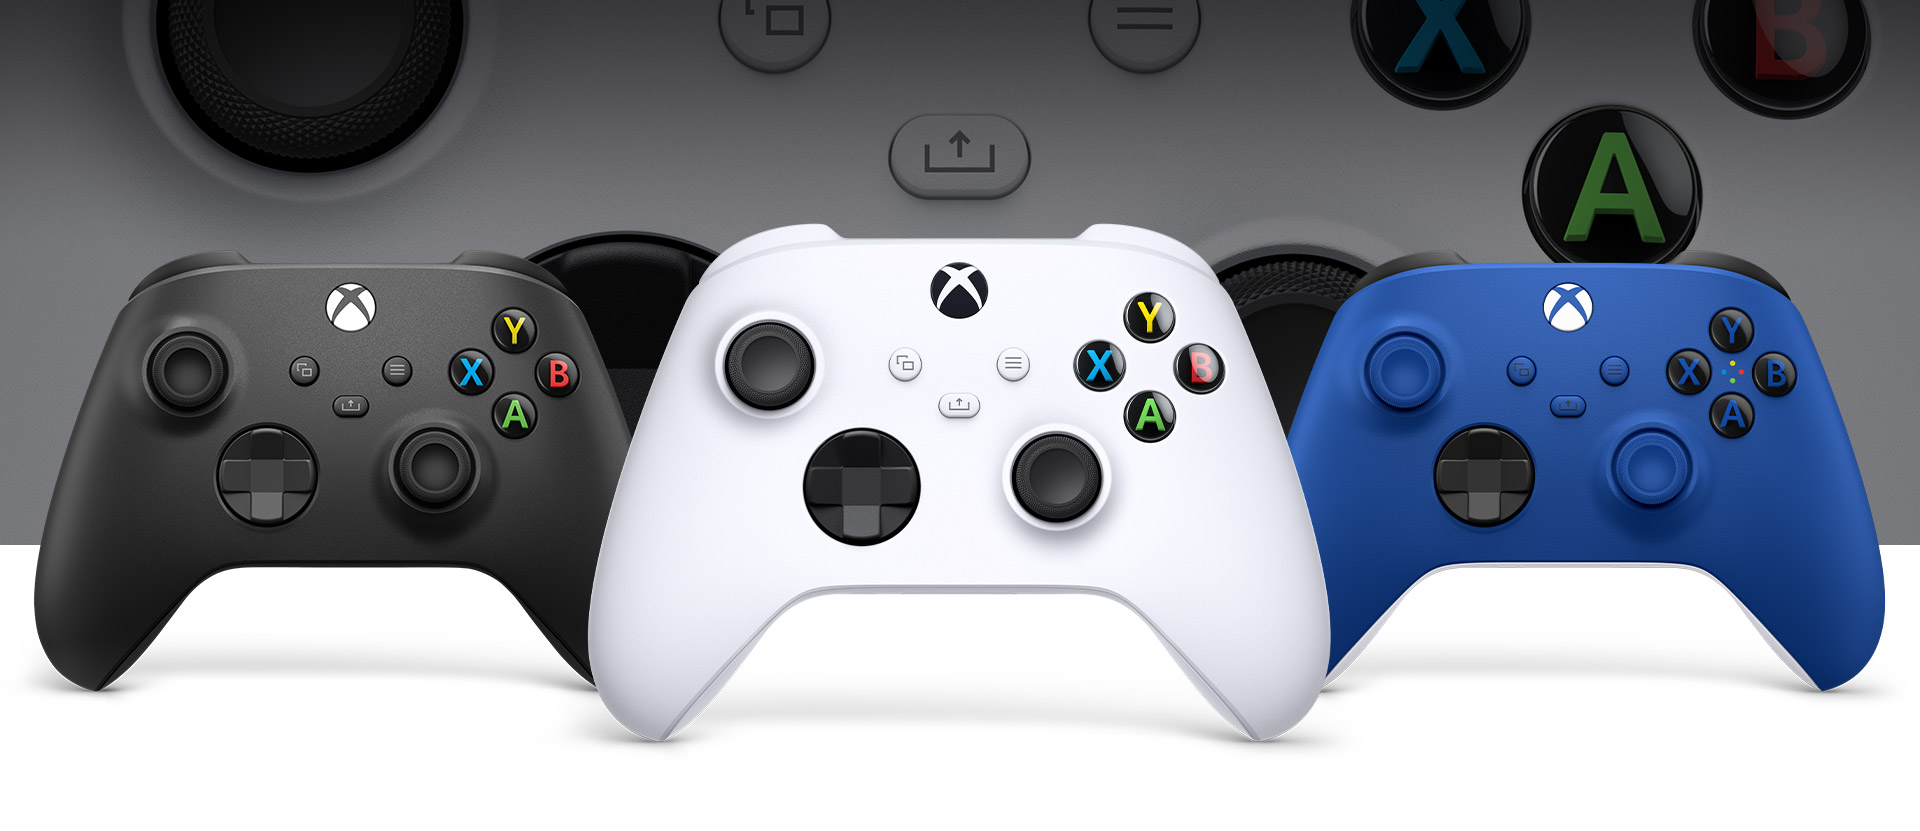 Kontroler Xbox w kolorze robotycznej bieli, a za nim: kontroler w kolorze węglowej czerni po lewej i kontroler w kolorze piorunującego błękitu po prawej